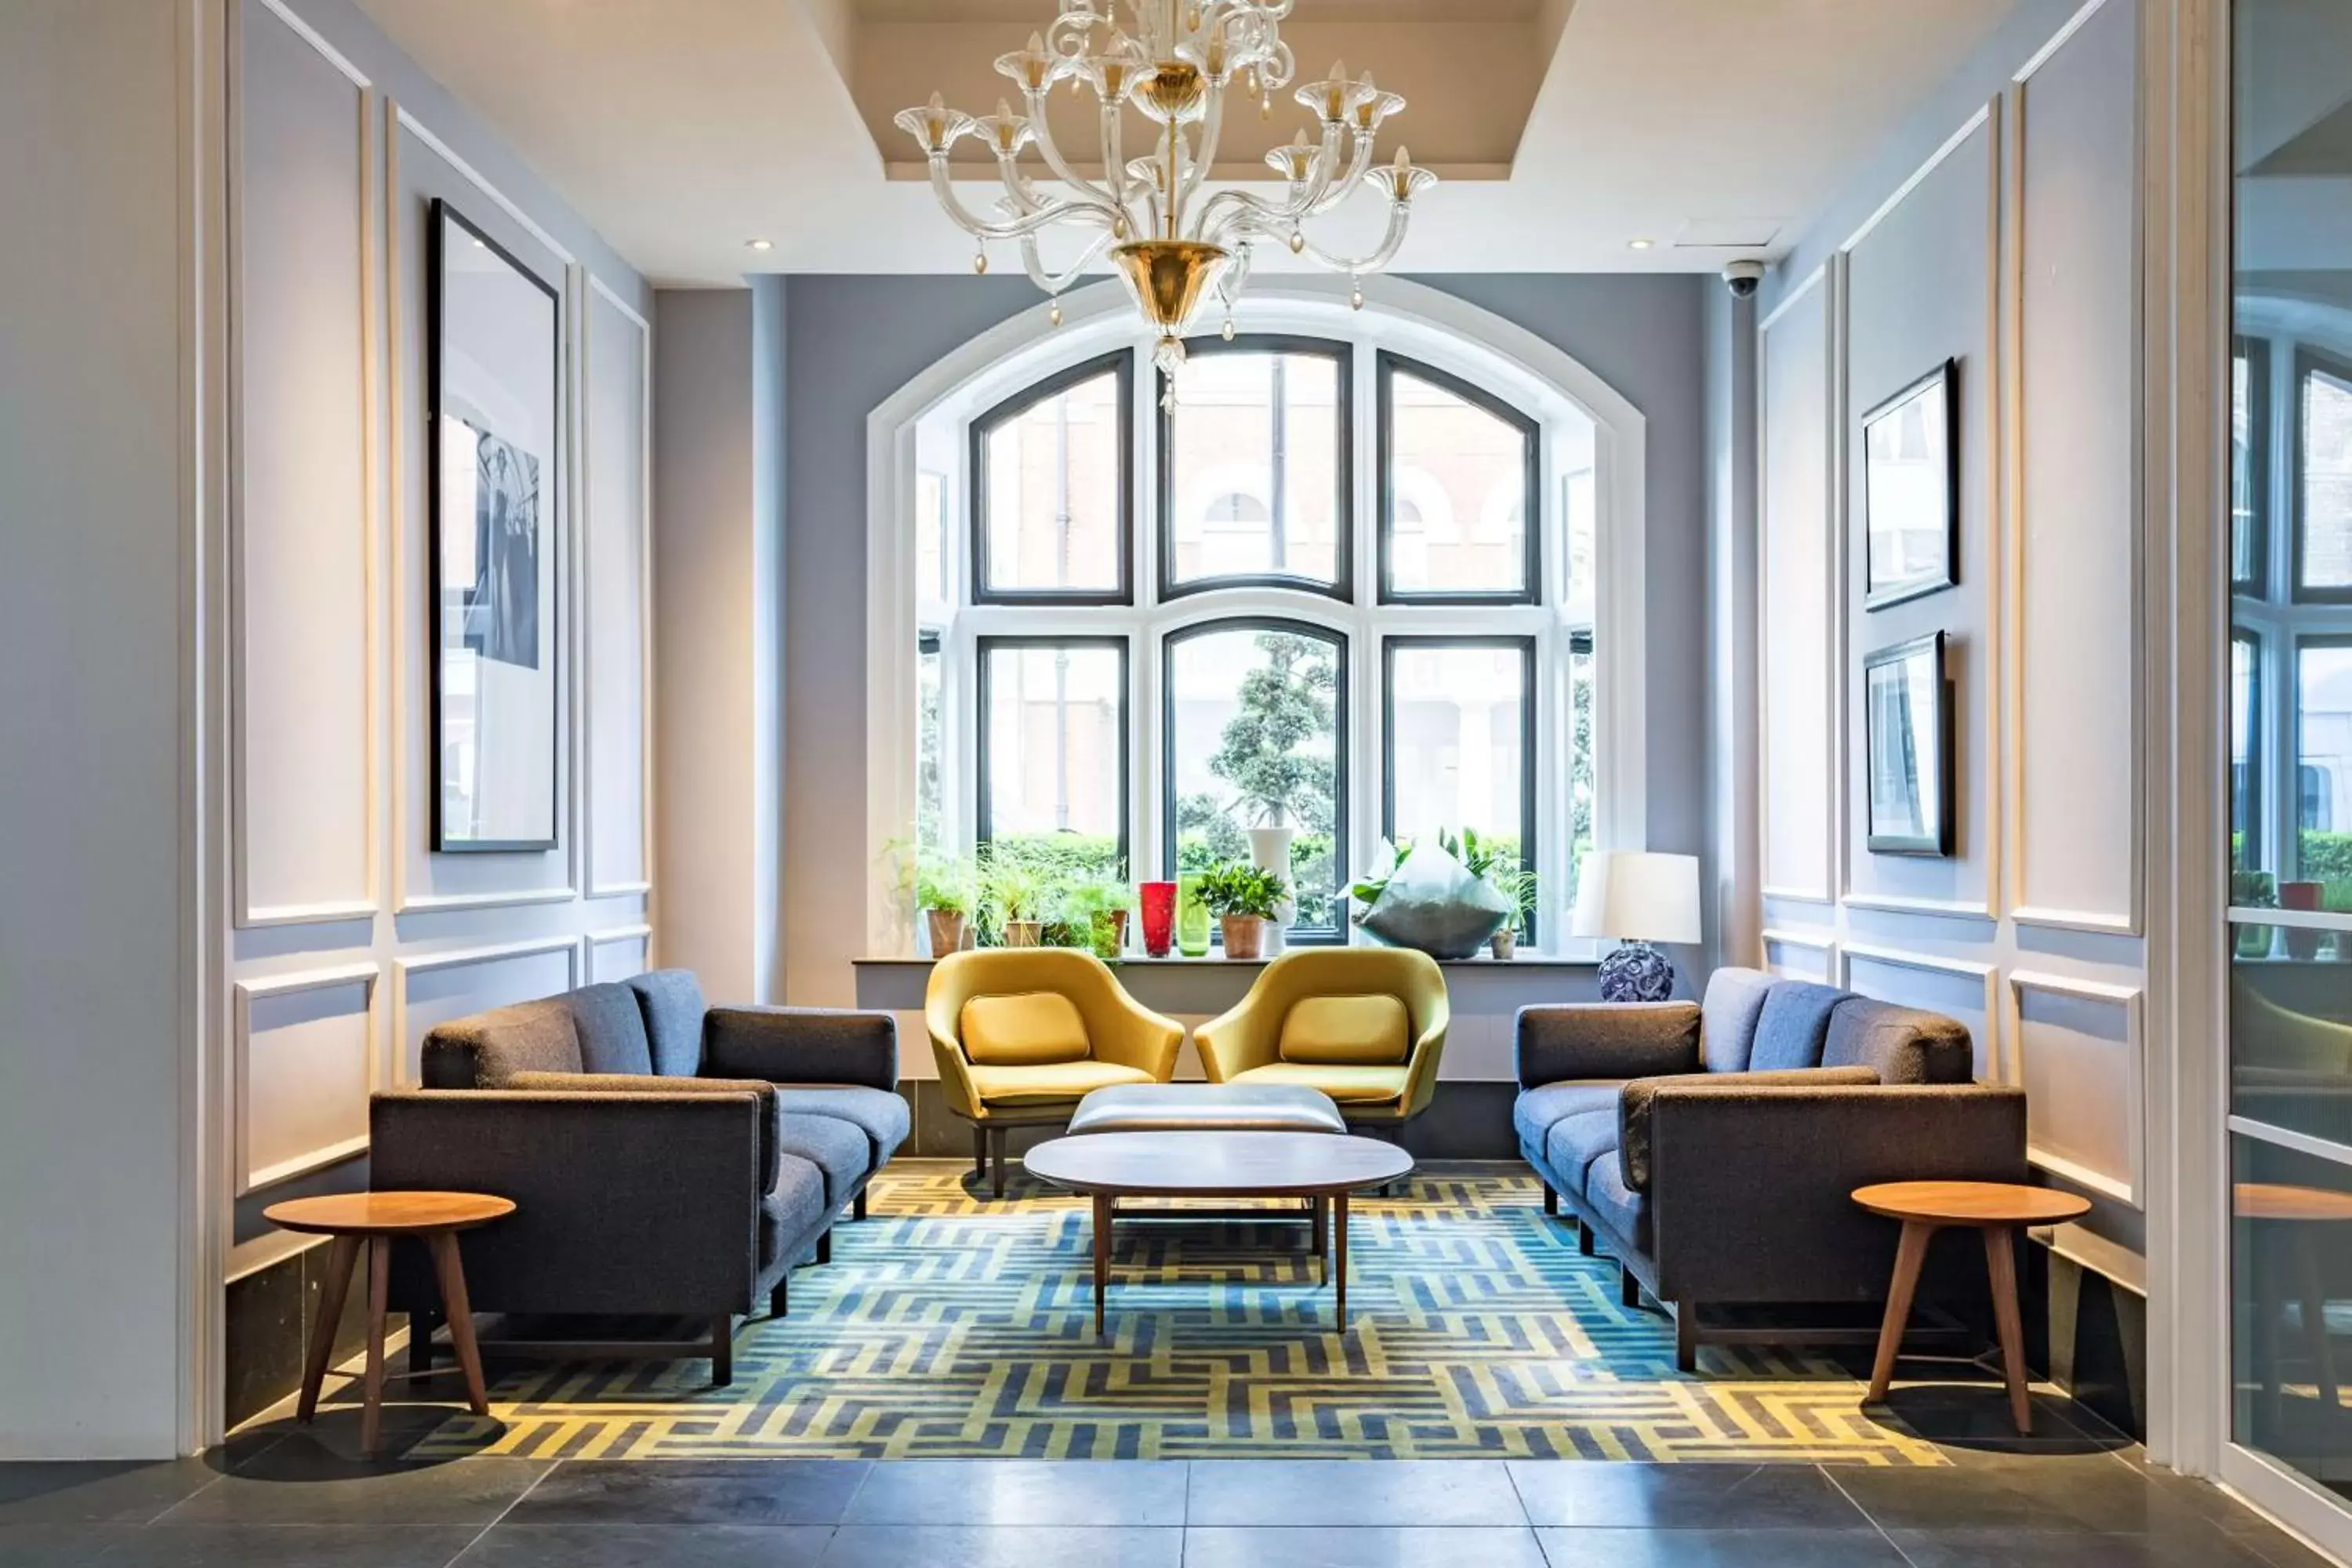 Lobby or reception in Radisson Blu Edwardian Bloomsbury Street Hotel, London